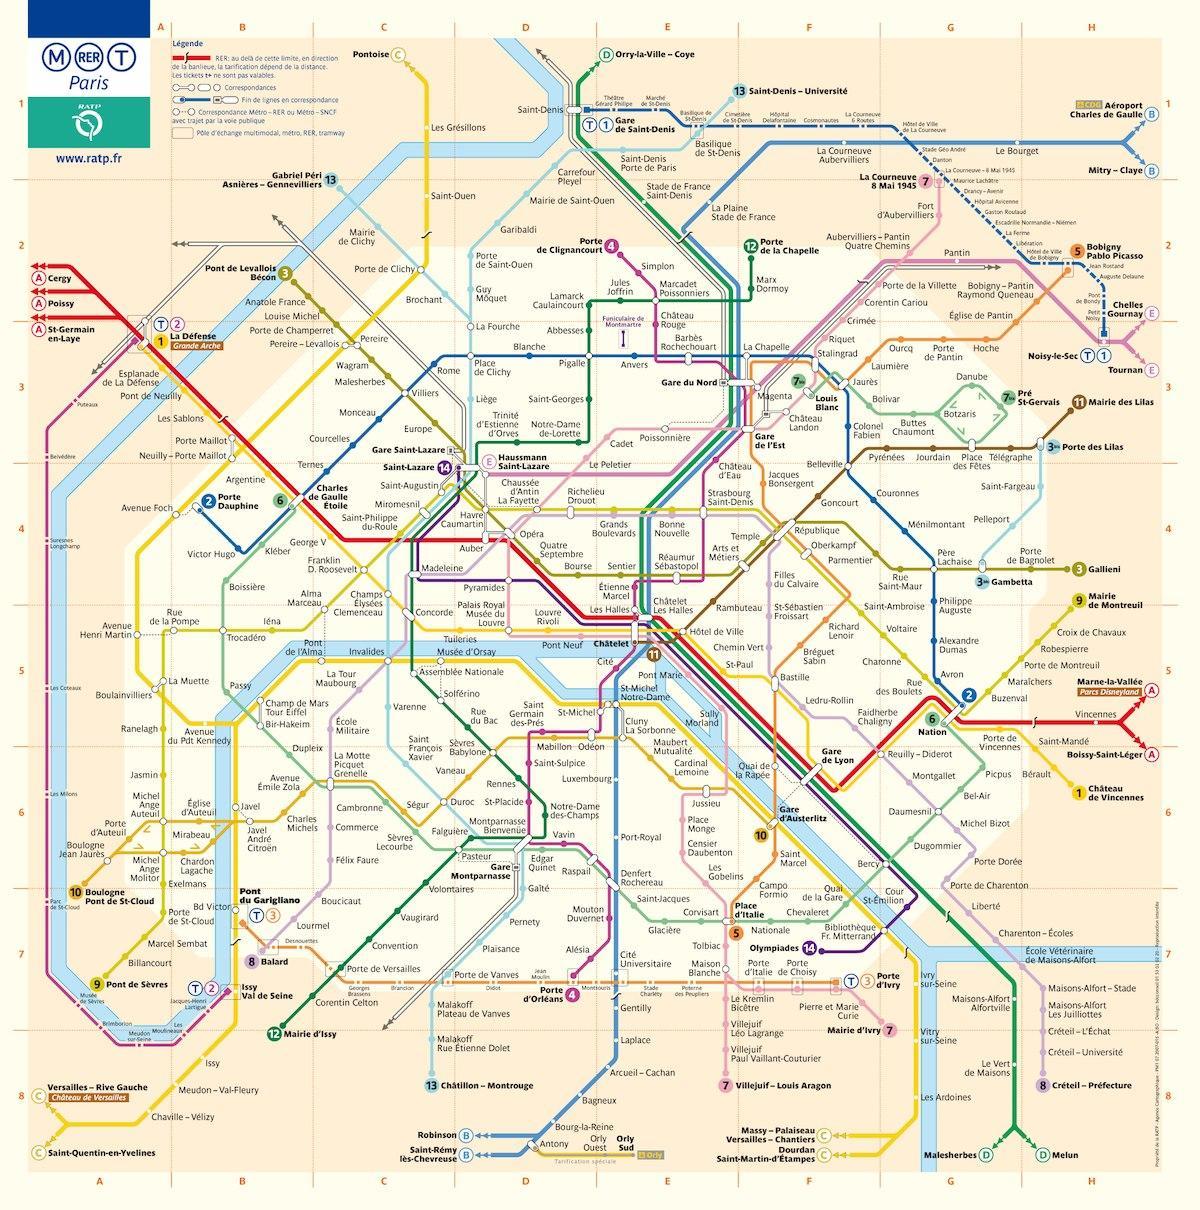 Washington dc karta podzemne željeznice s ulice